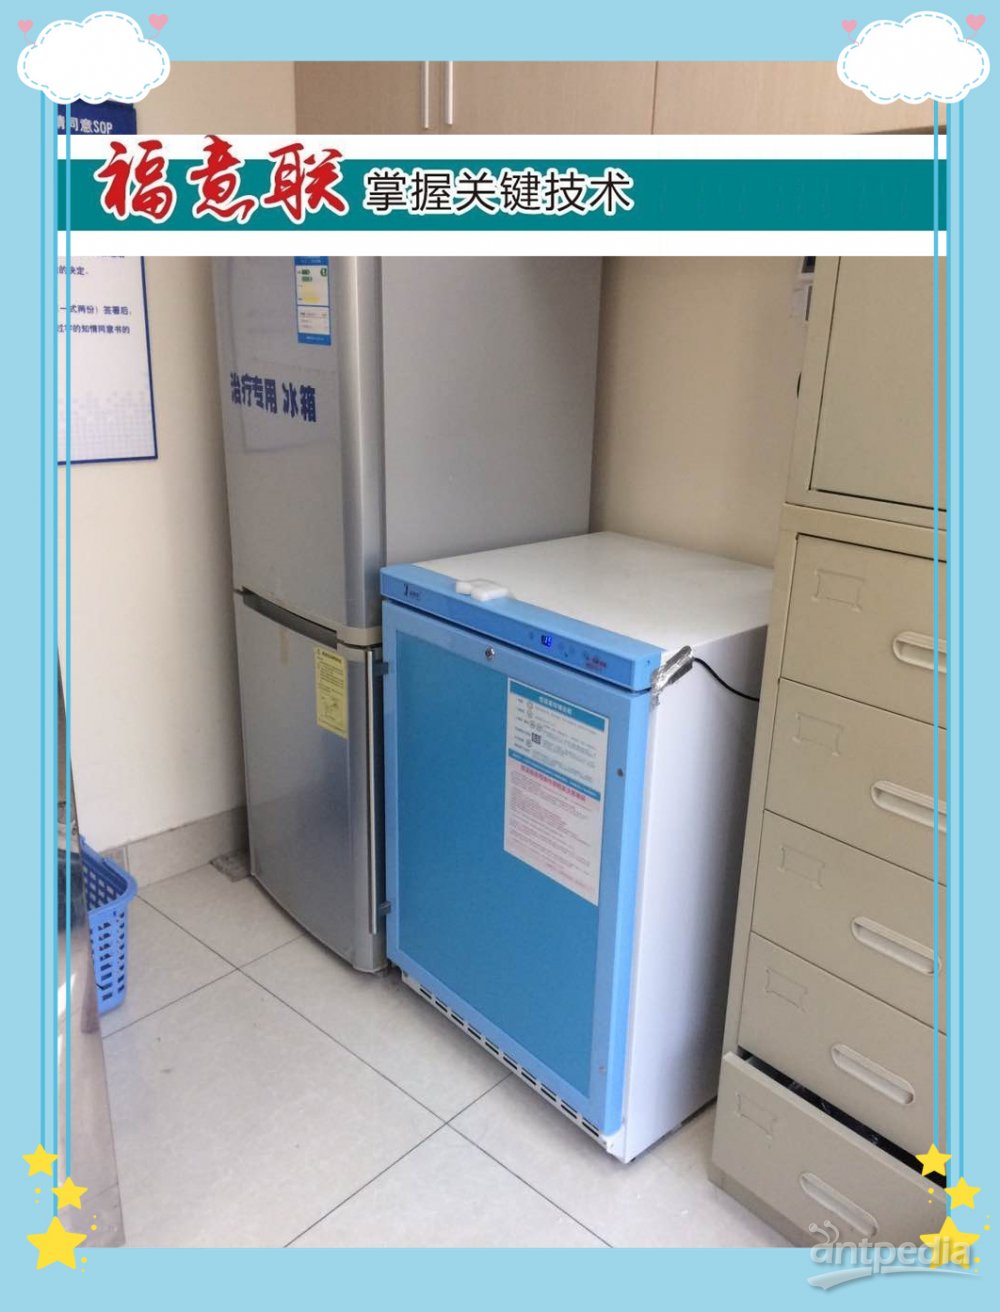 剂型:注射用粉末冰箱FYL-YS-828LD